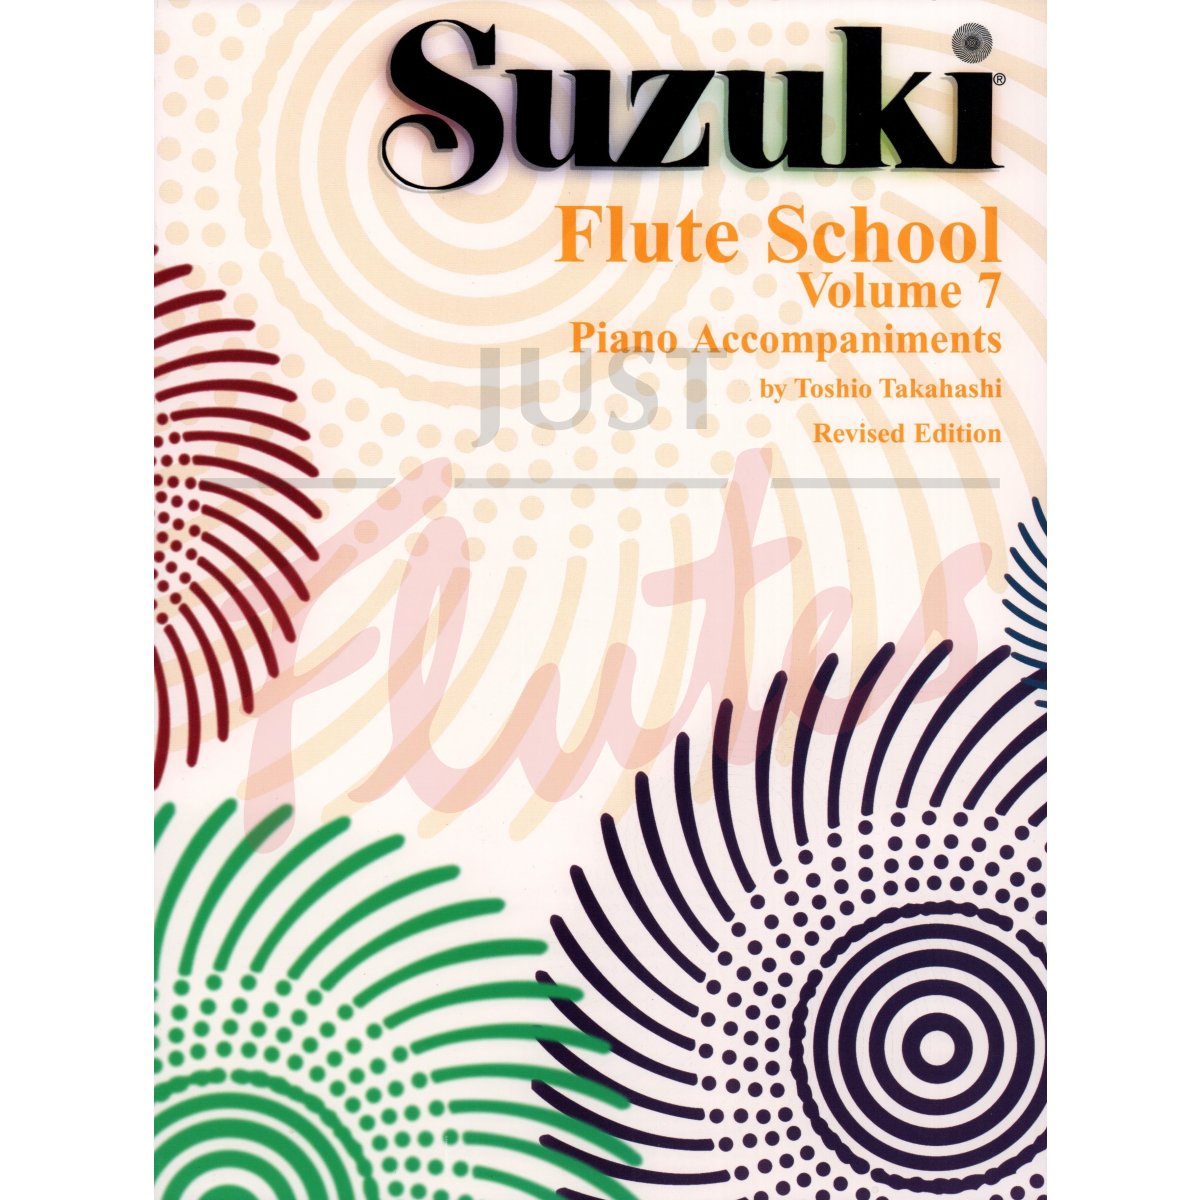 Suzuki Flute School Vol 7 (Revised Edition) [Piano Accompaniment]